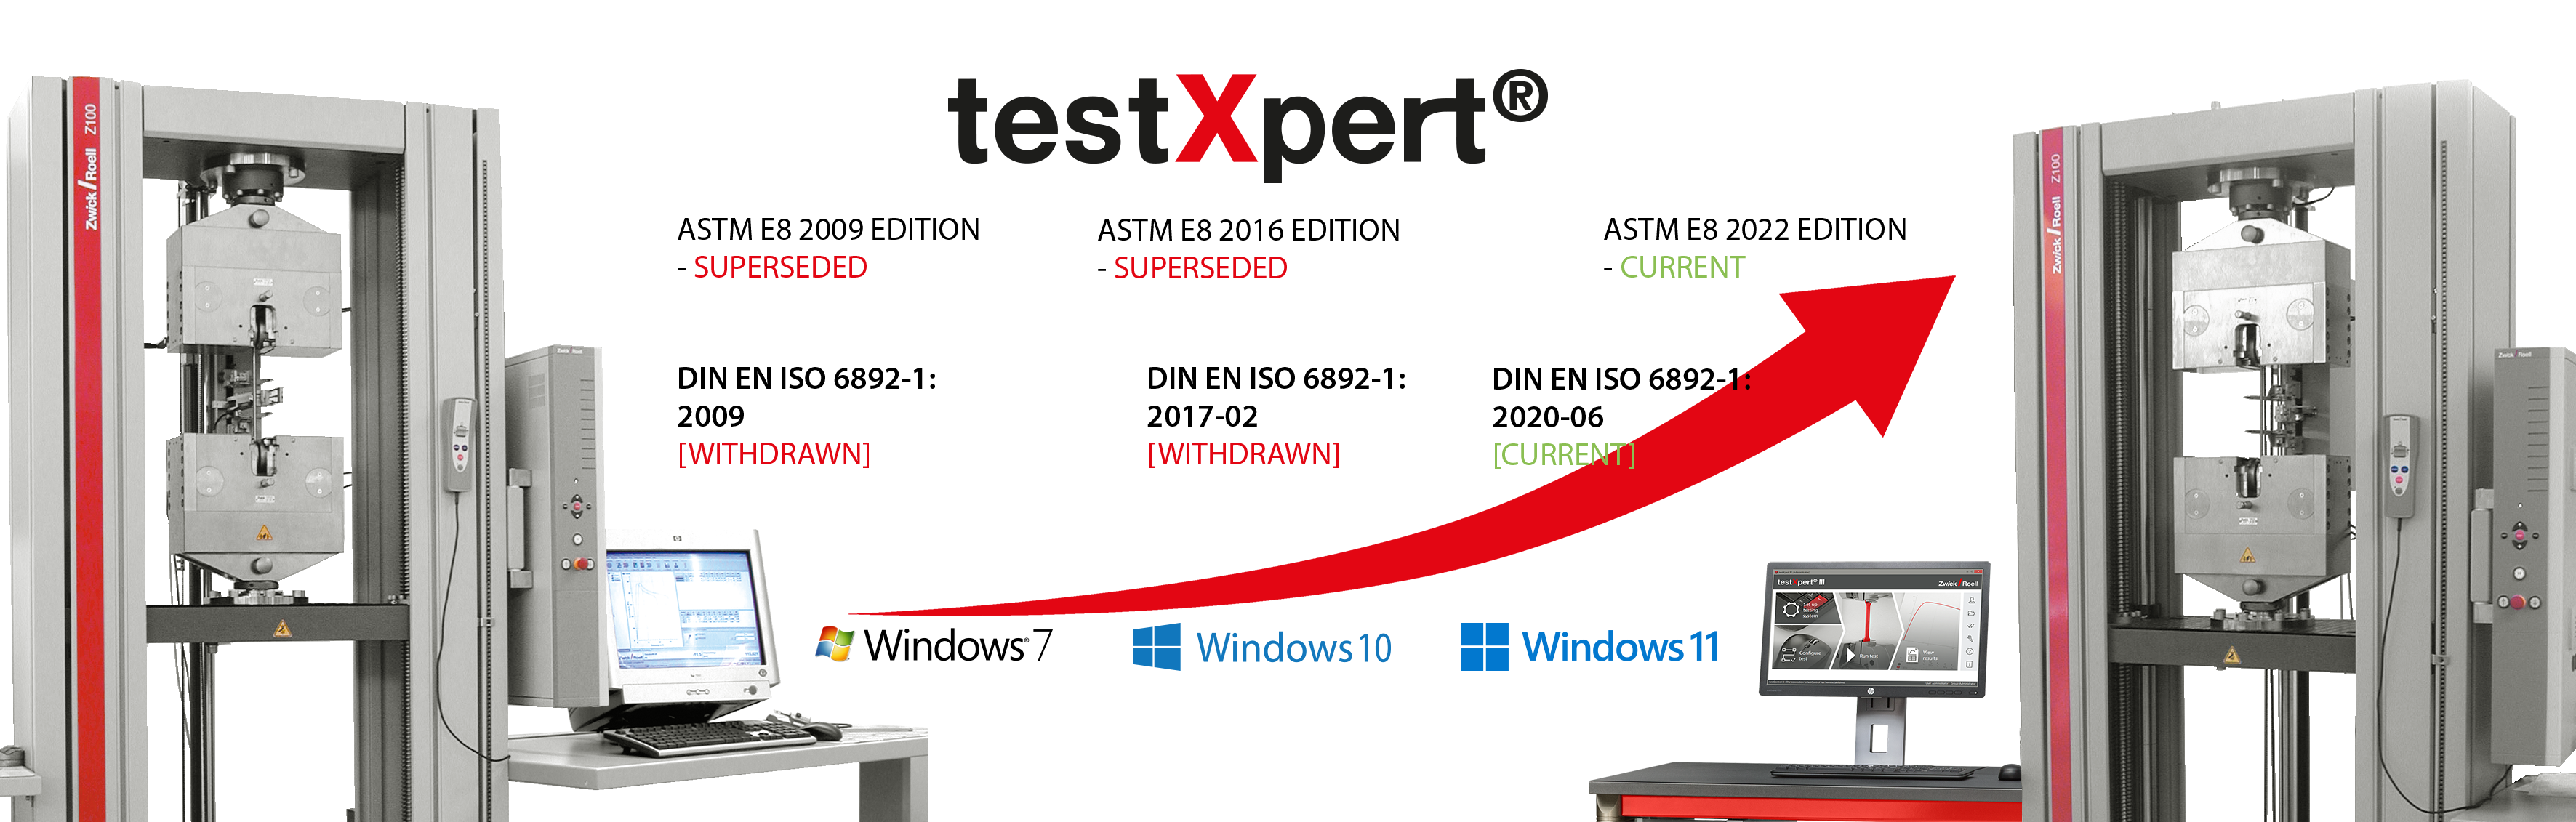 試験基準が変更されたり新しいオペレーティングシステムが導入されたりする場合でも、testXpertは柔軟に変化します。